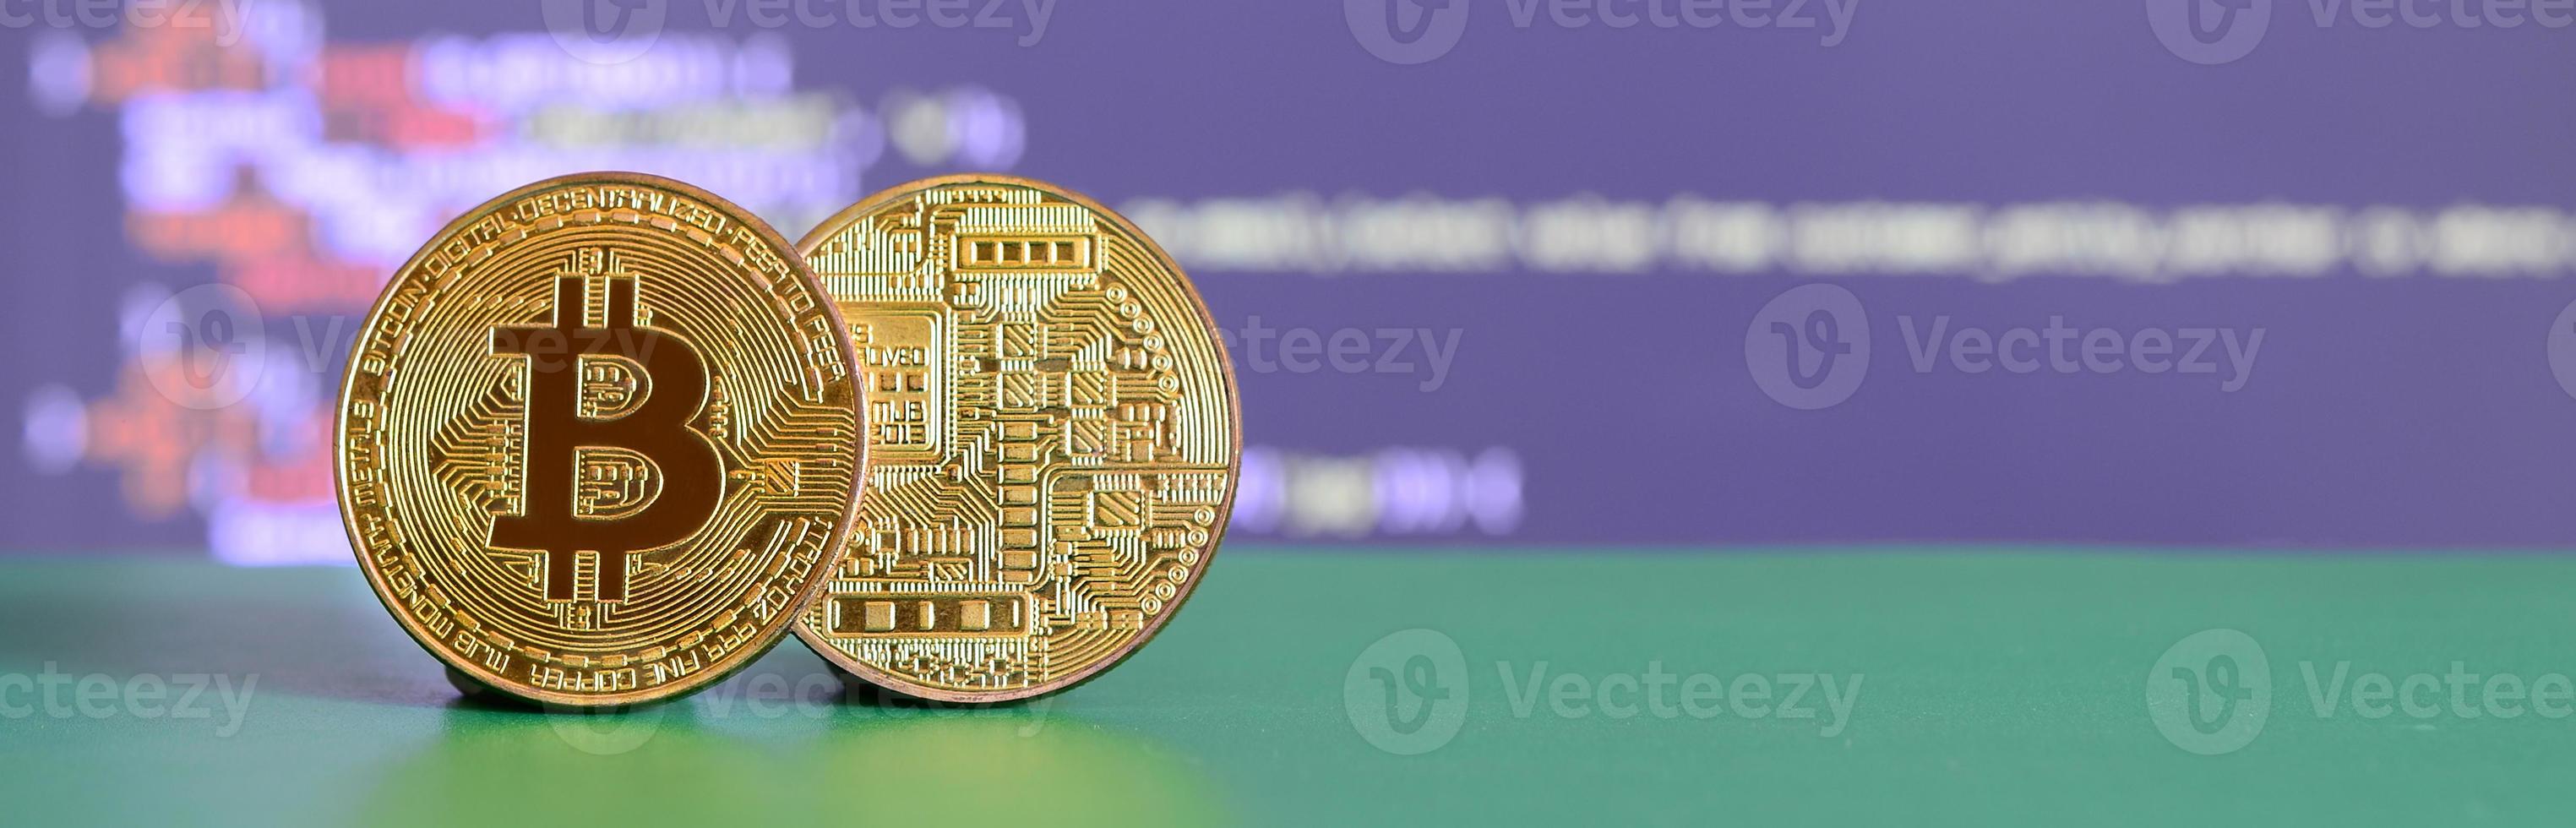 deux bitcoins d'or se trouvent sur la surface verte à l'arrière-plan de l'écran, ce qui montre le processus d'extraction de la crypto-monnaie photo